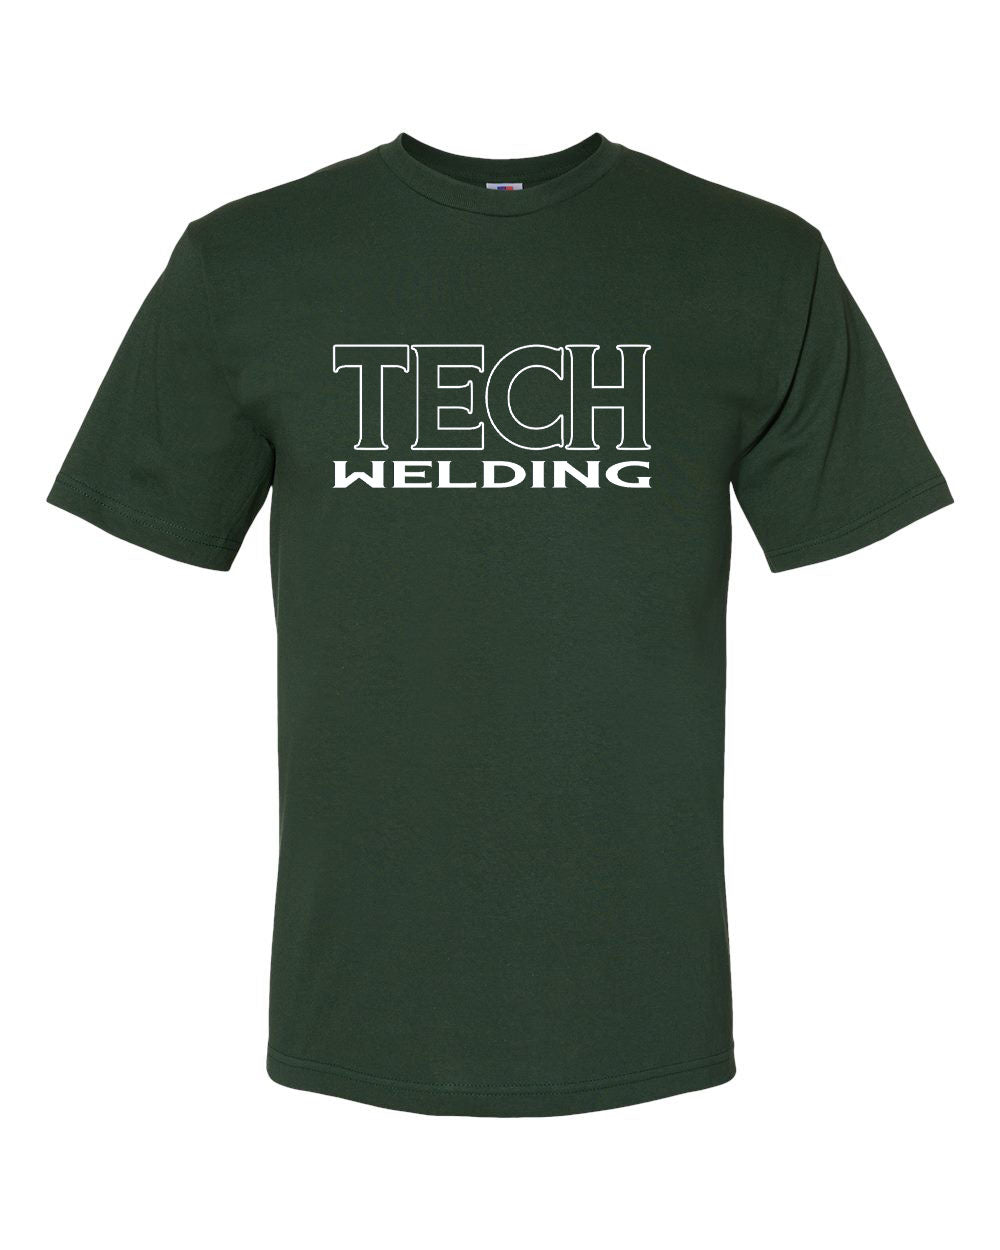 Sussex Tech Welding Design 3 T-Shirt